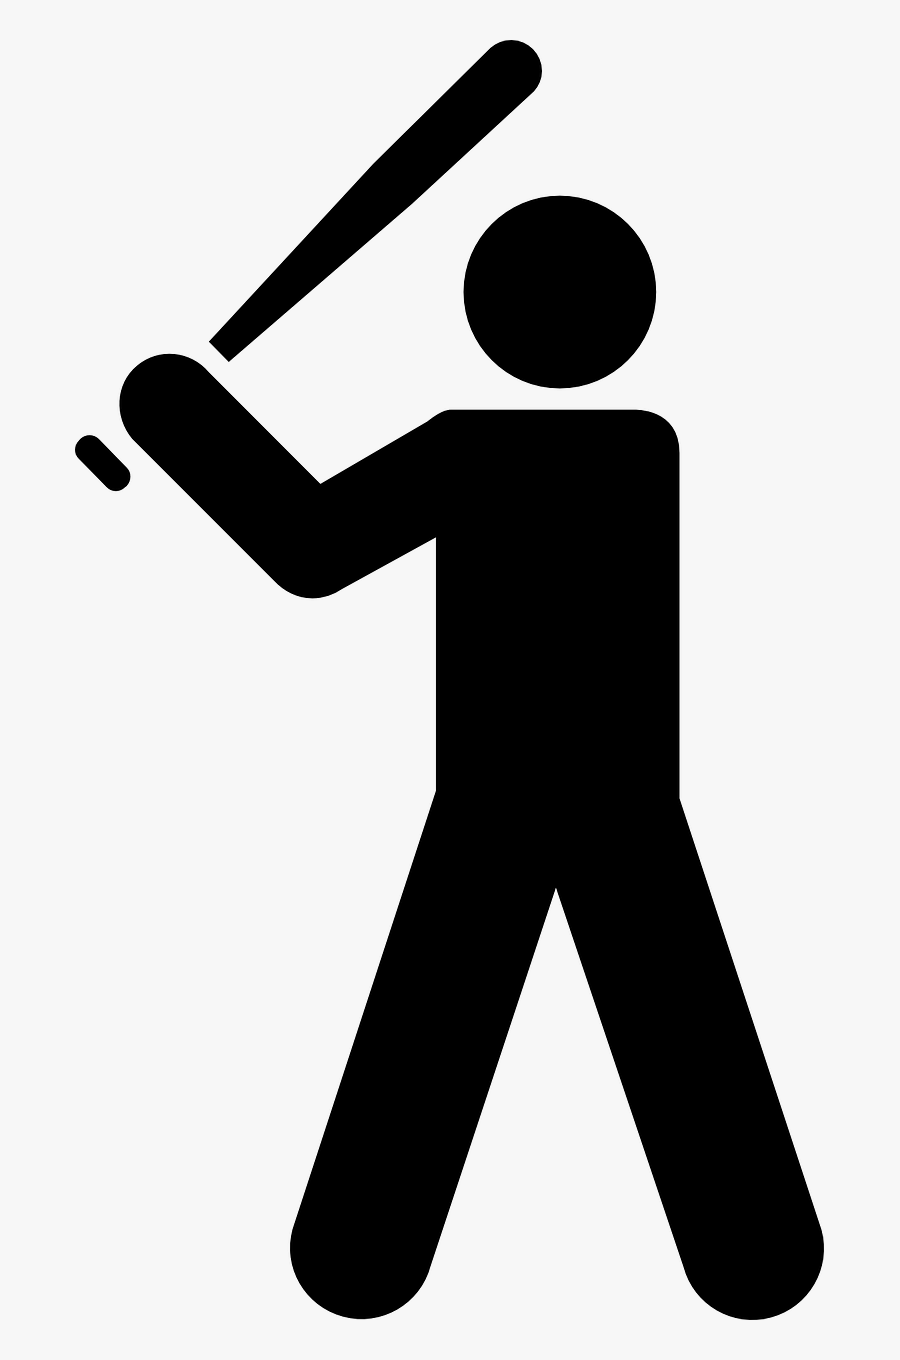 Baseball Bat Svg - Stick Figure Holding A Baseball Bat, Transparent Clipart